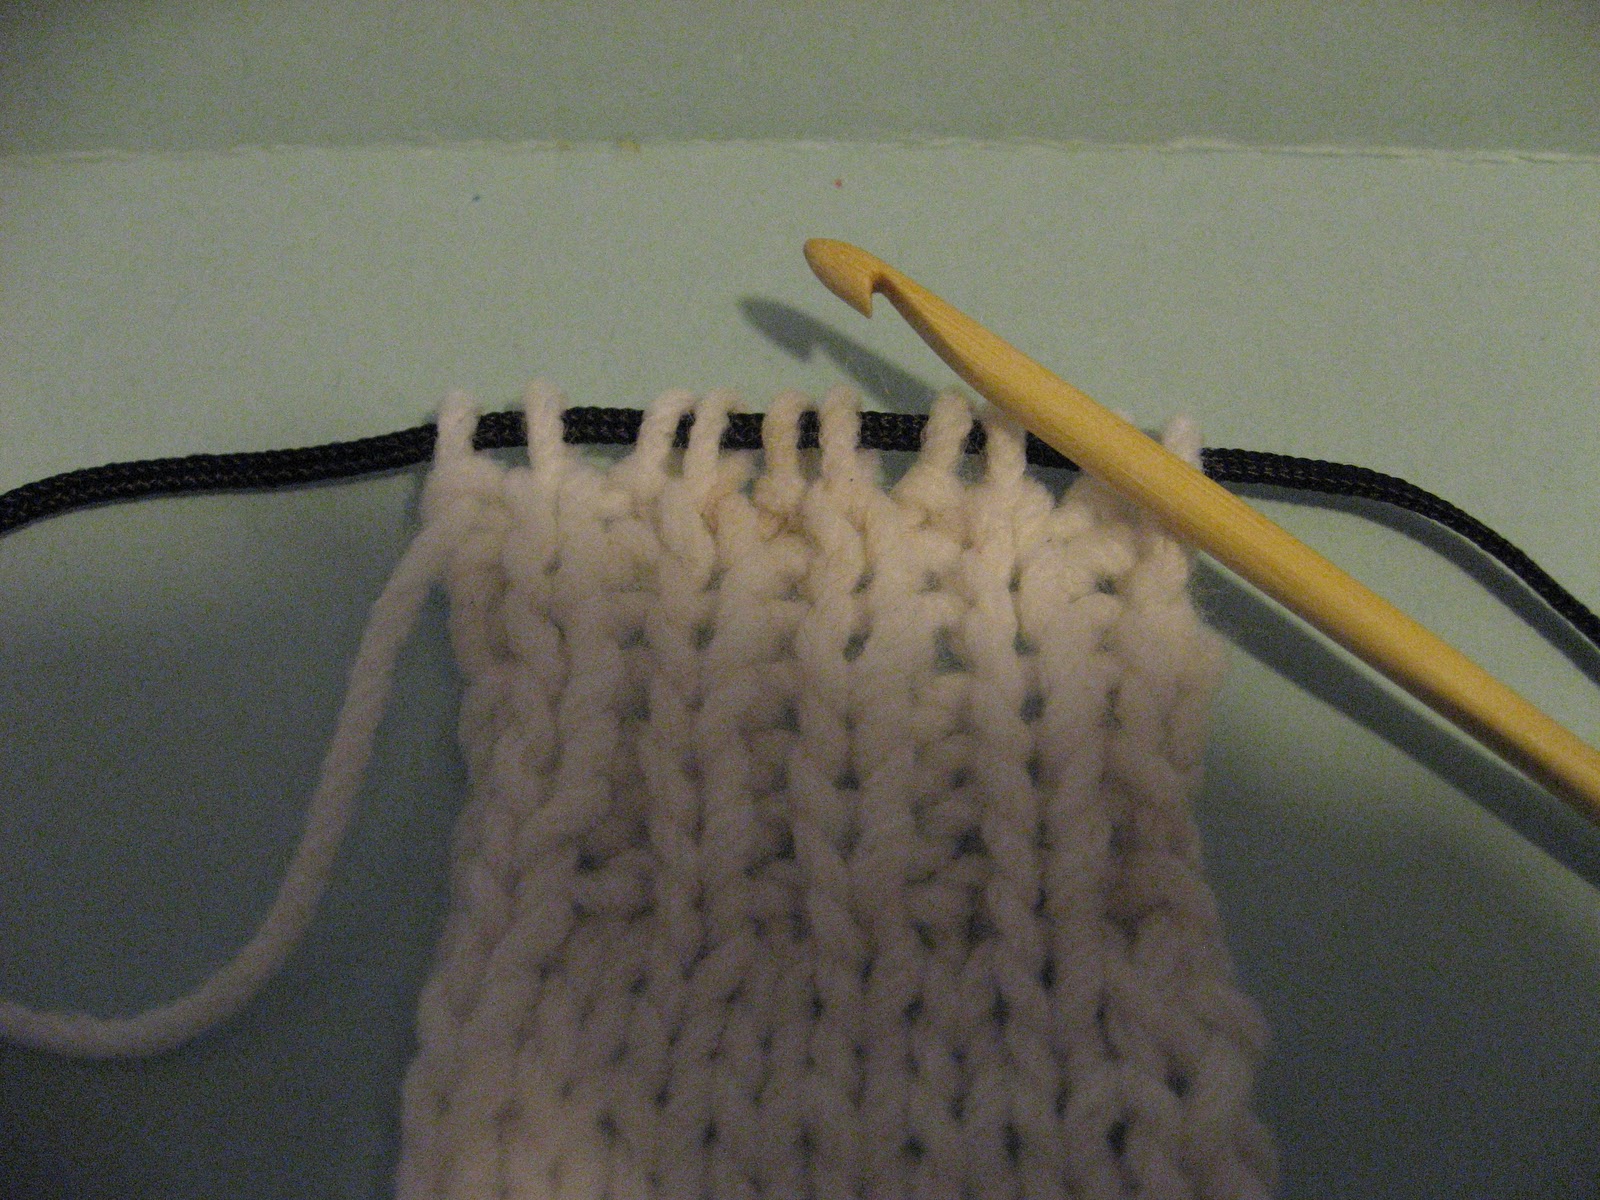 Knit-Purl Block Stitch - Knitting - Learn to Knit - Knitting Patterns